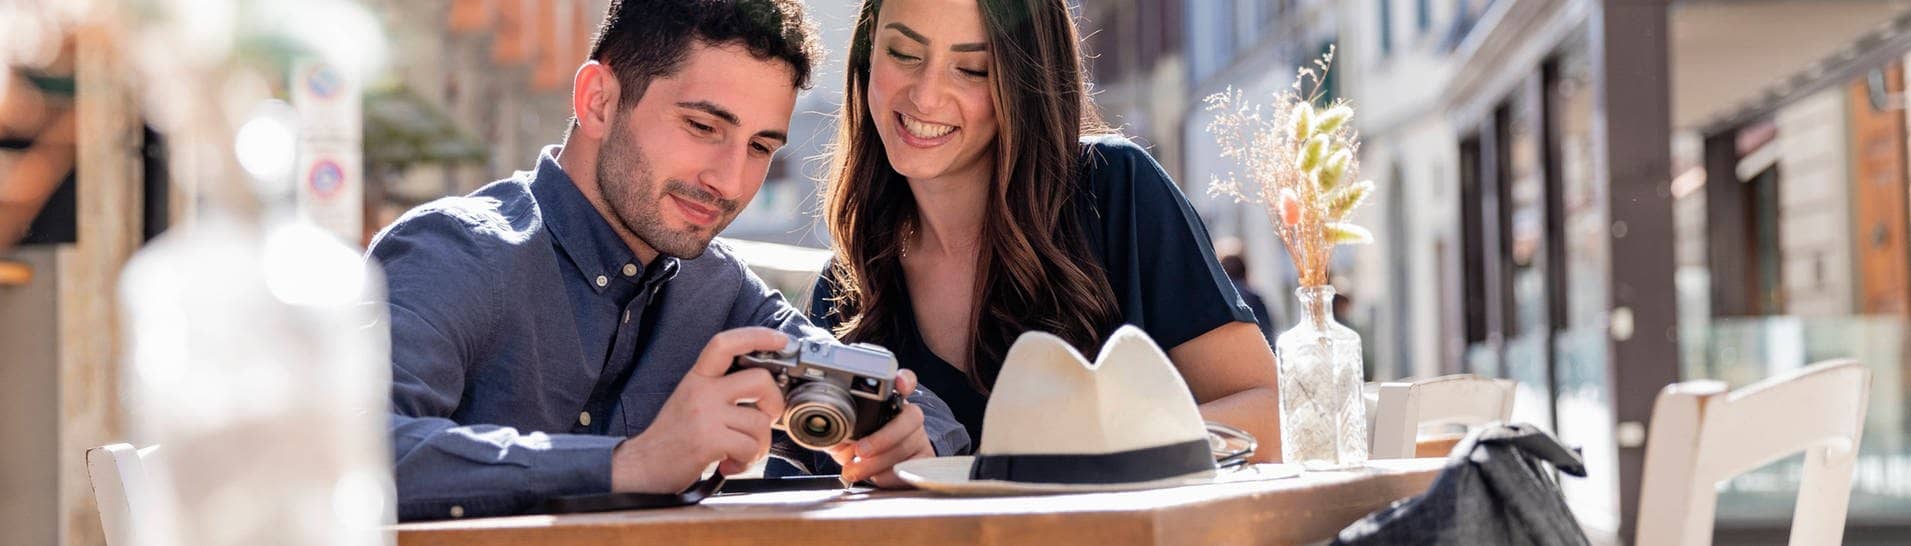 Ein Pärchen Touristen beim Städtetrip. Sie schauen sich Fotos auf einer Kamera an und sitzen in einem Café einer Stadt .